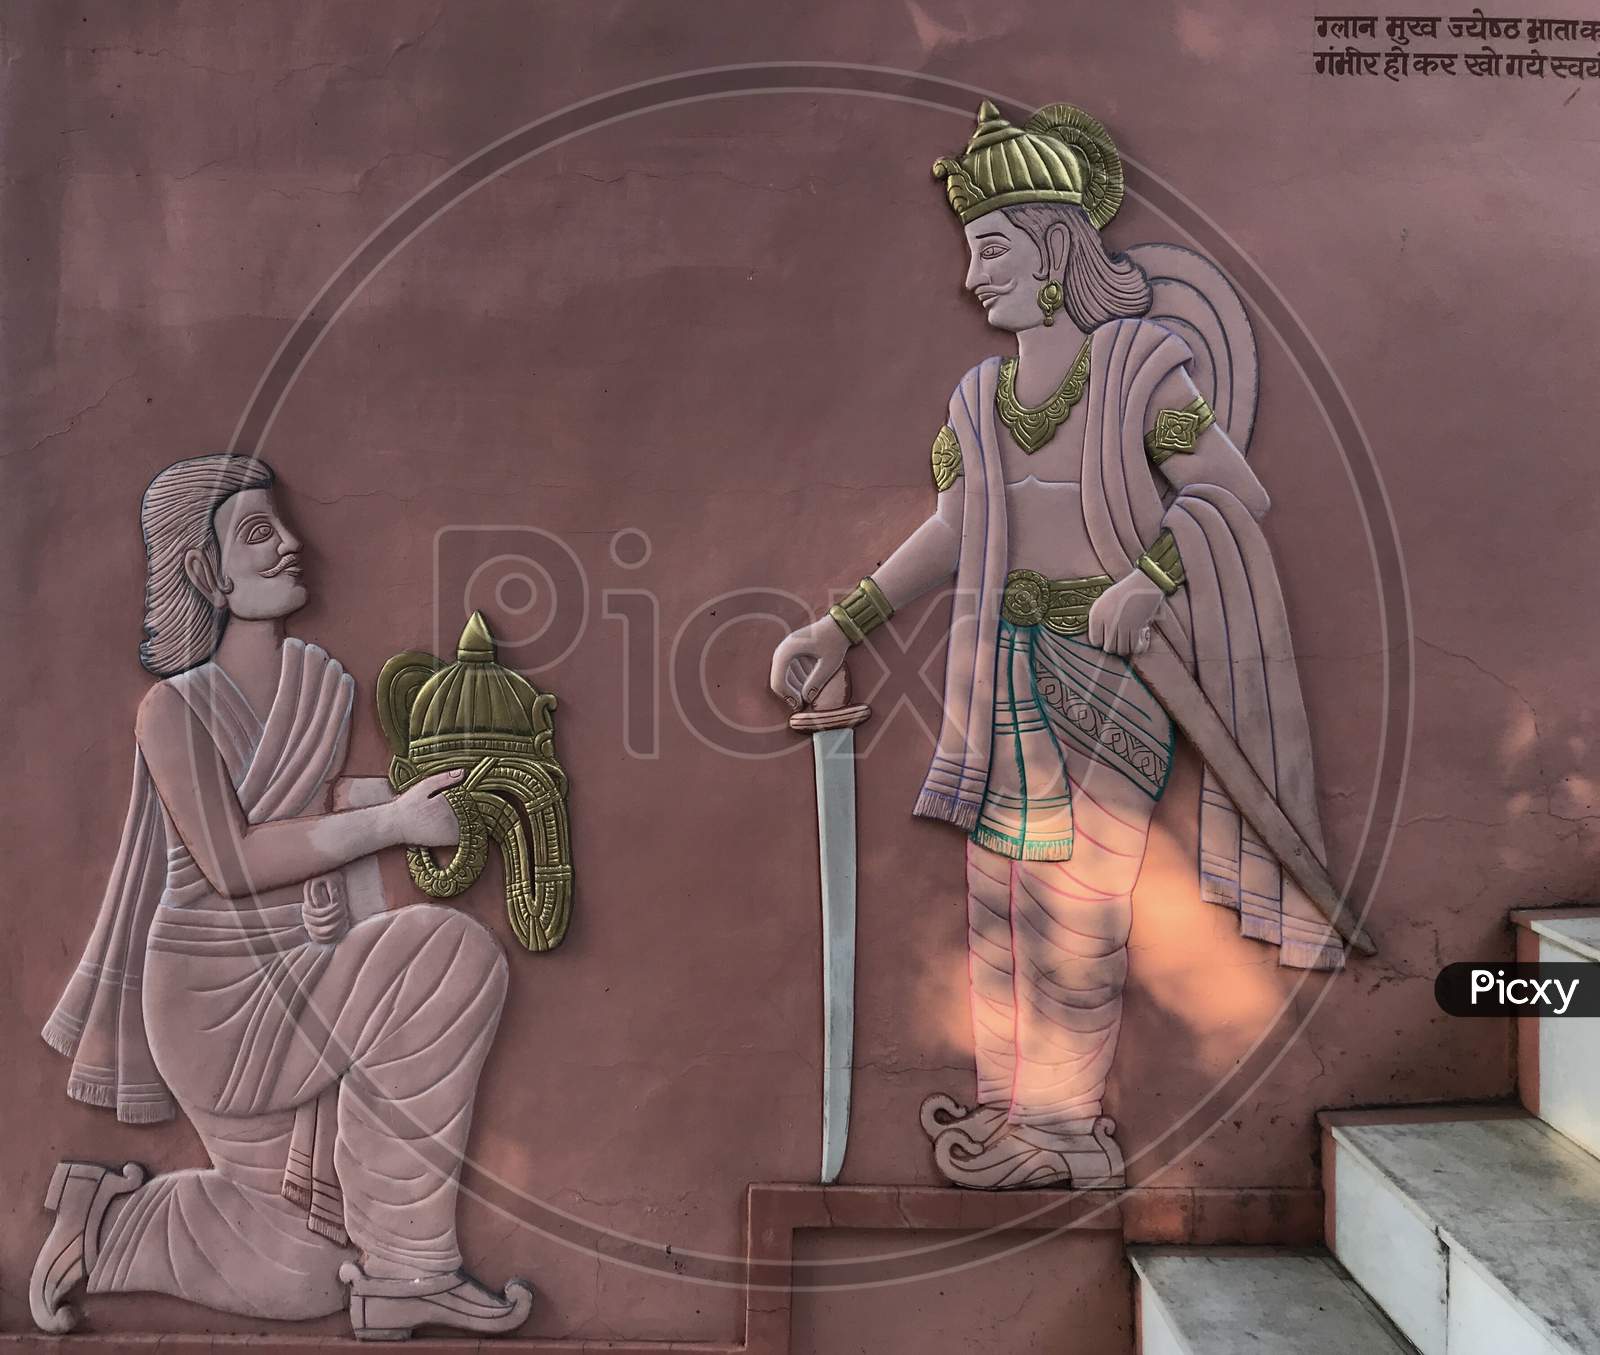 Jabalpur, Madhya Pradesh/India : Lord Bahubali and Bharat Chakravarti Prasang or Context at Pisanhari Ki Madhiya, Jabalpur